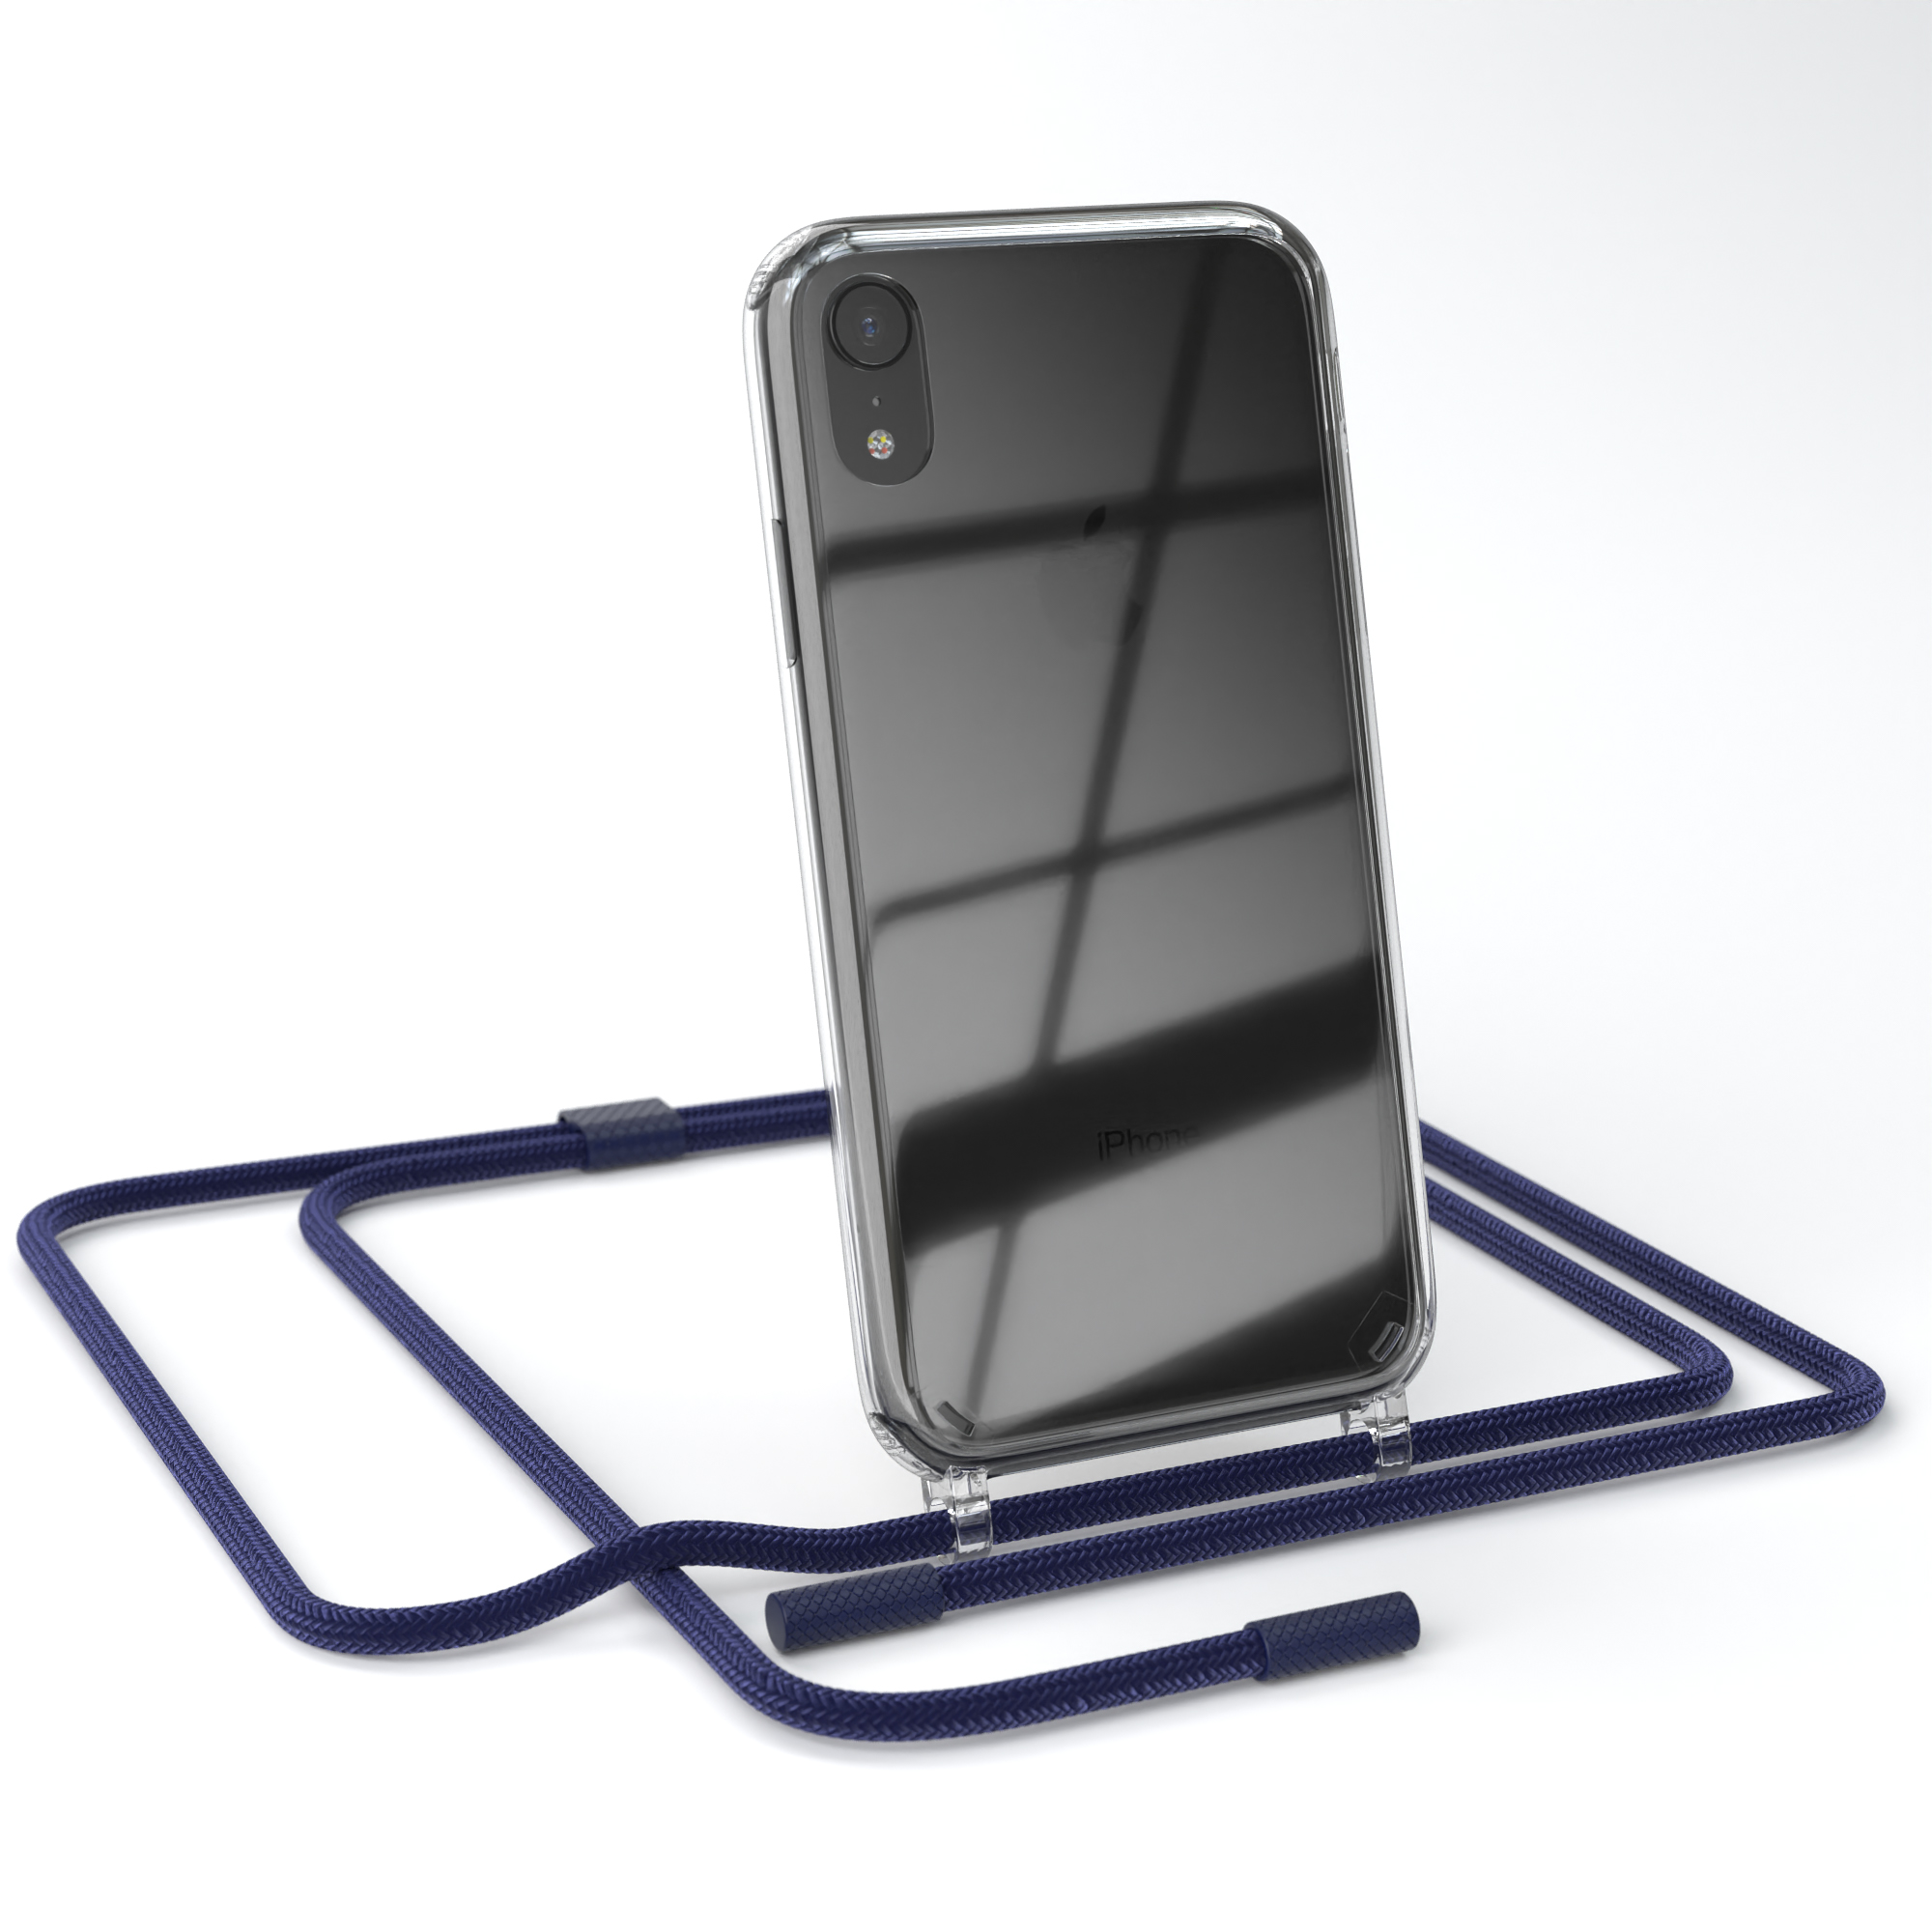 EAZY CASE iPhone unifarbend, Nachtblau runder XR, Dunkelblau mit / Apple, Transparente Kette Umhängetasche, Handyhülle